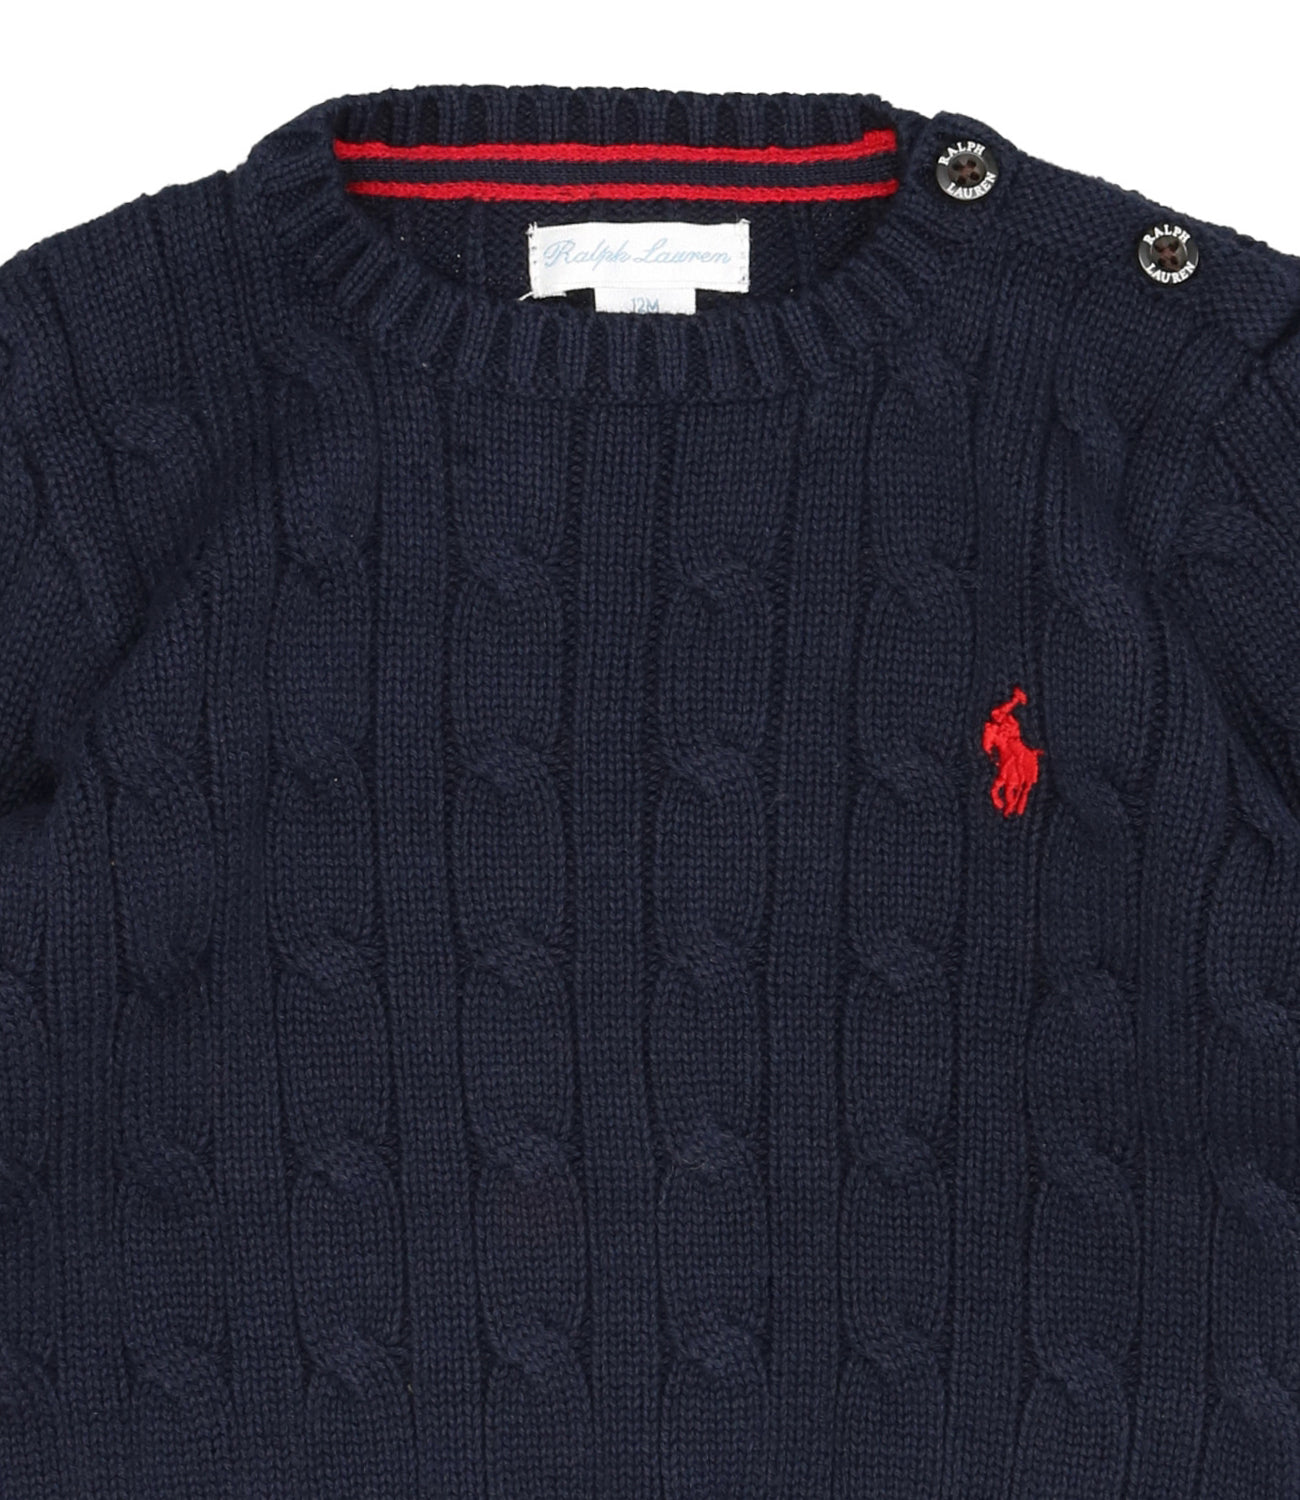 Ralph Lauren Childrenswear | Navy Blue Sweater